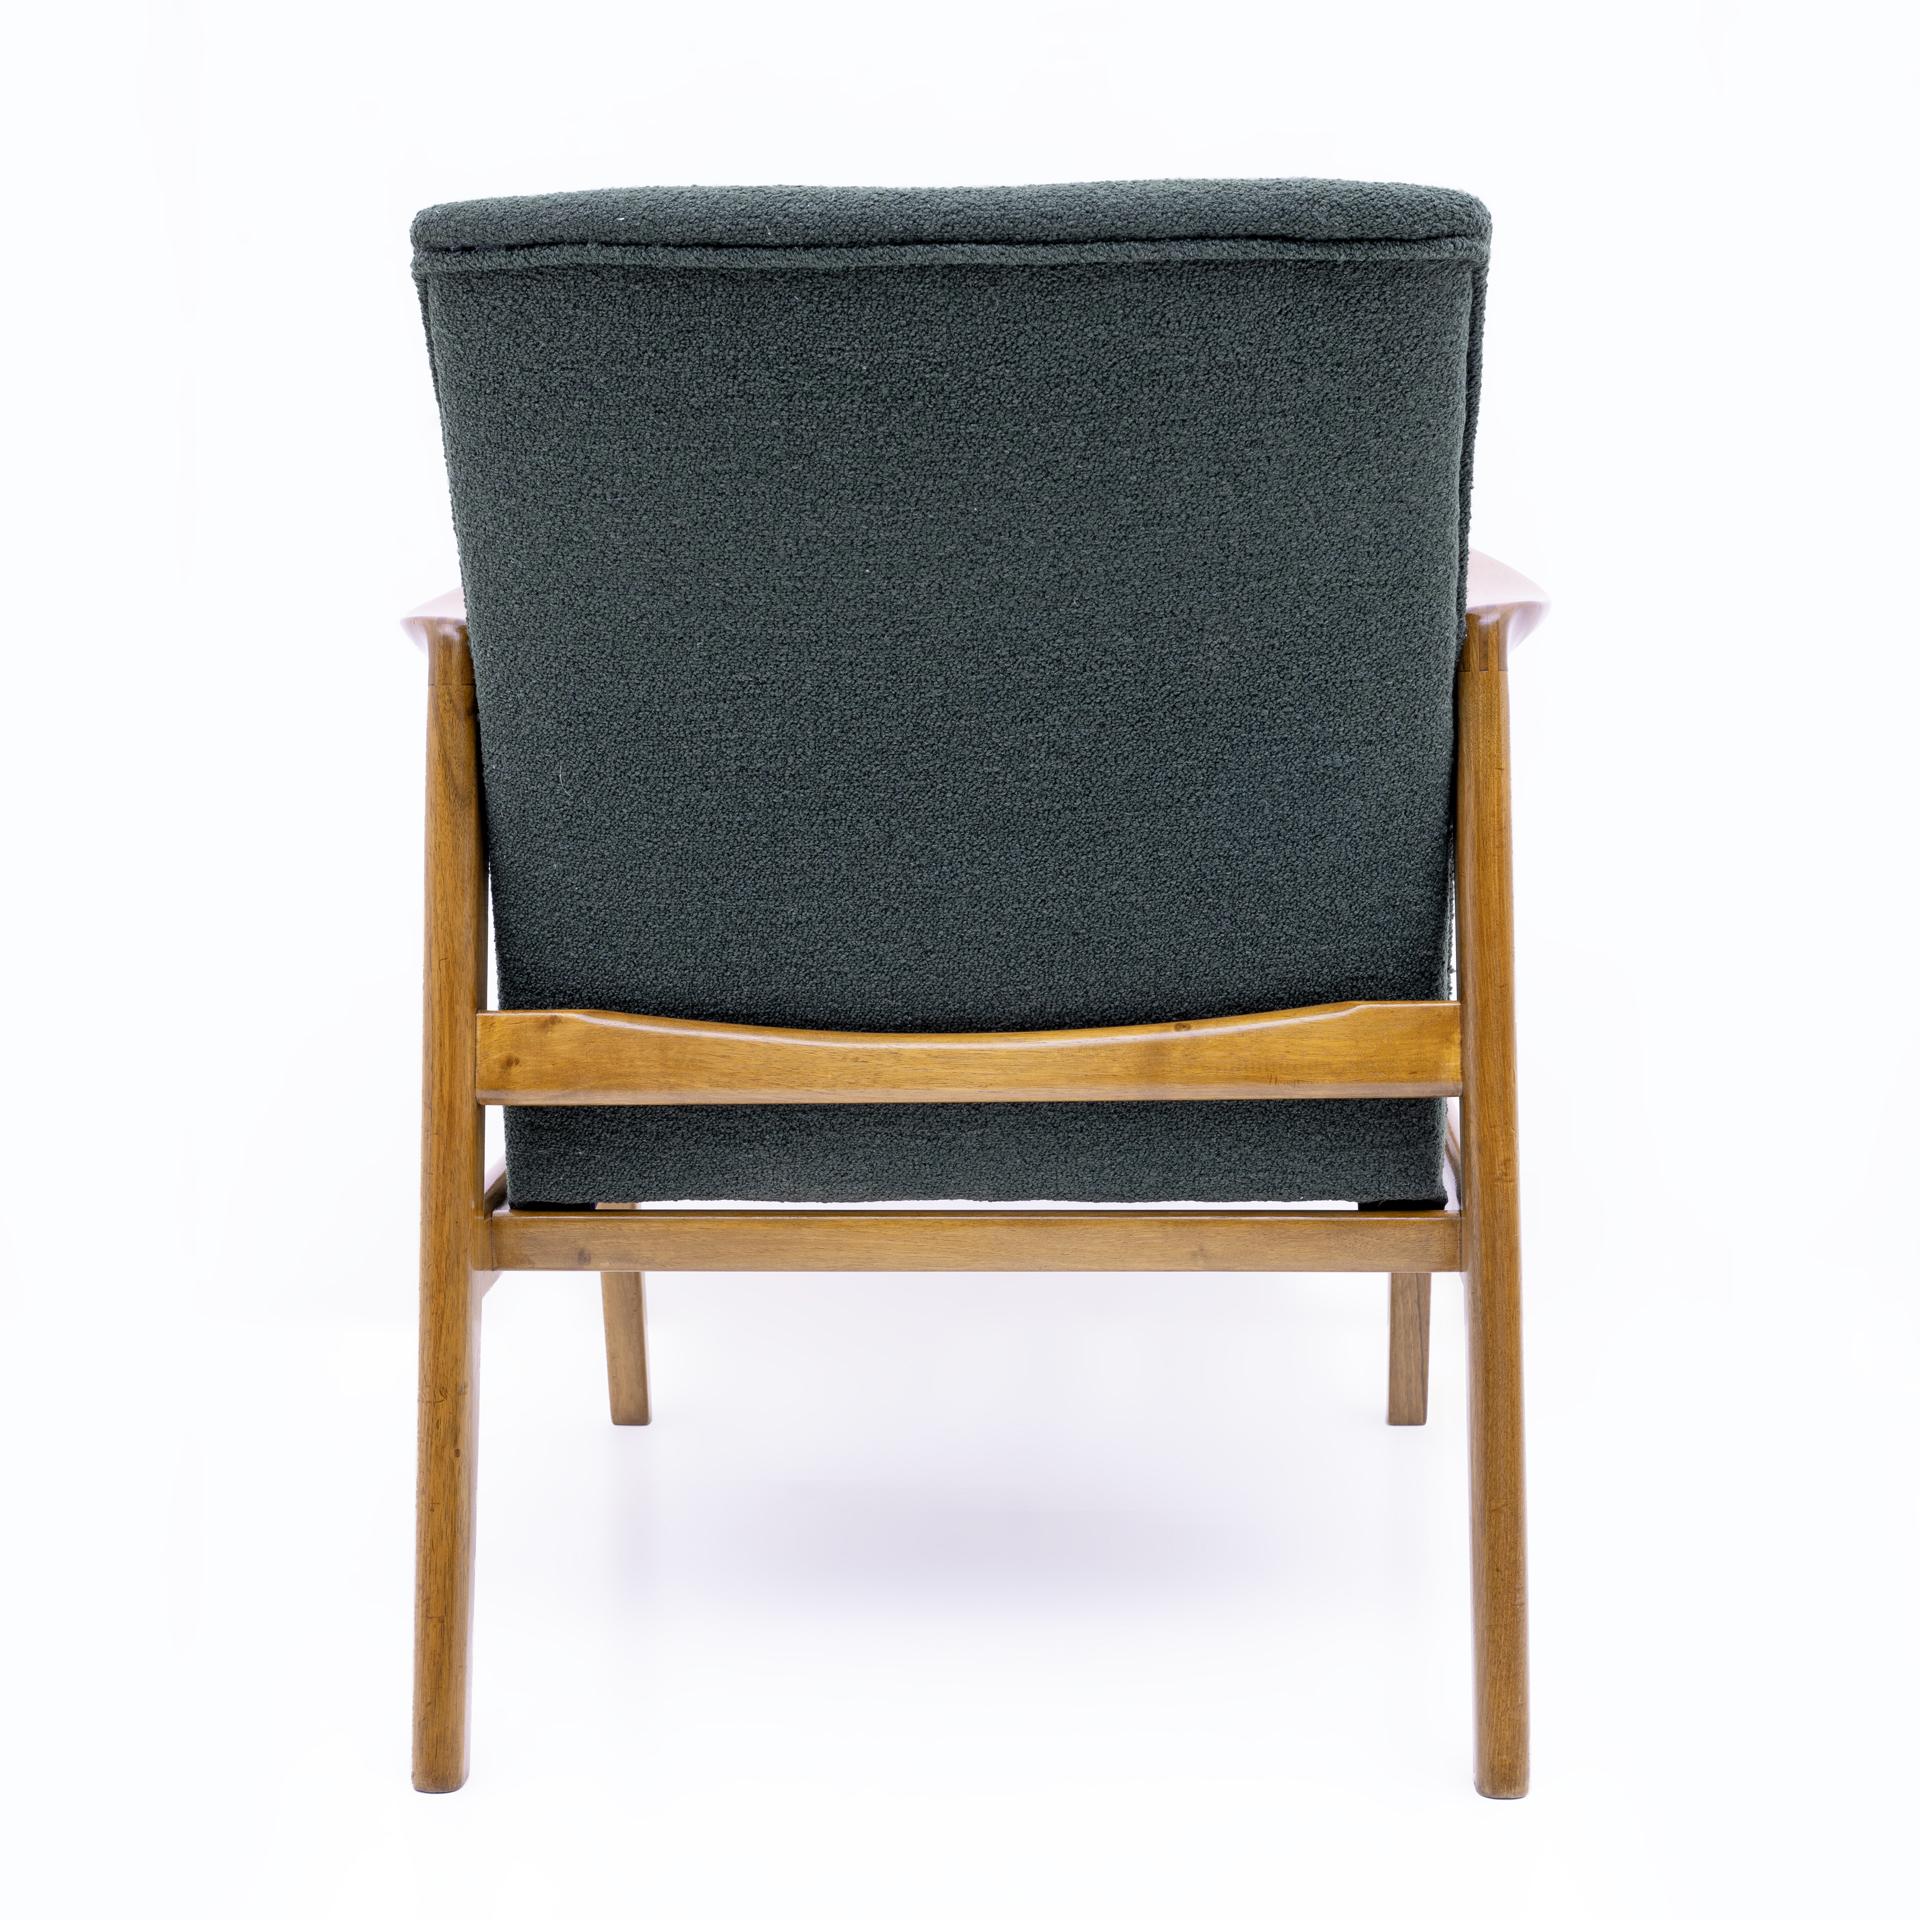 Gio Ponti Mid-century Modern Italian Armchair for Cassini, 1960s For Sale 2